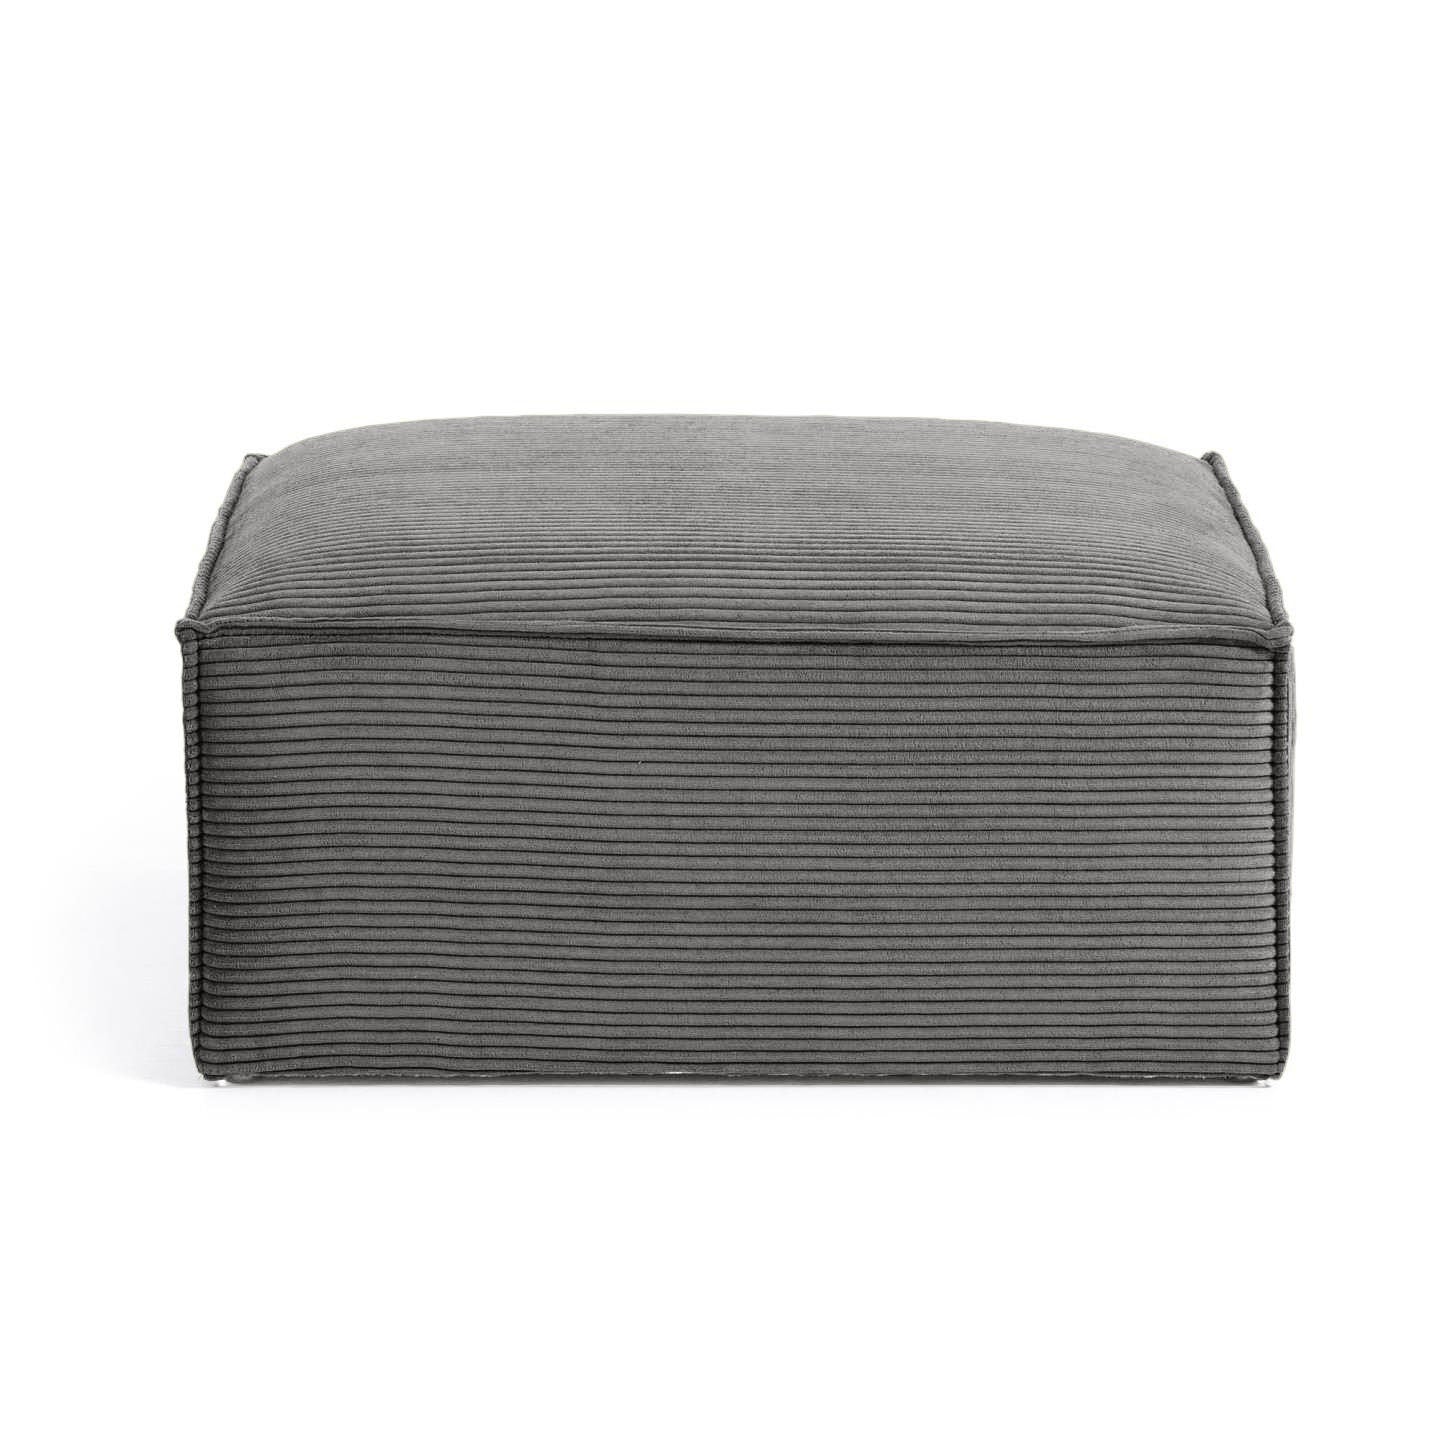 Blok footrest in grey wide seam corduroy, 90 x 70 cm